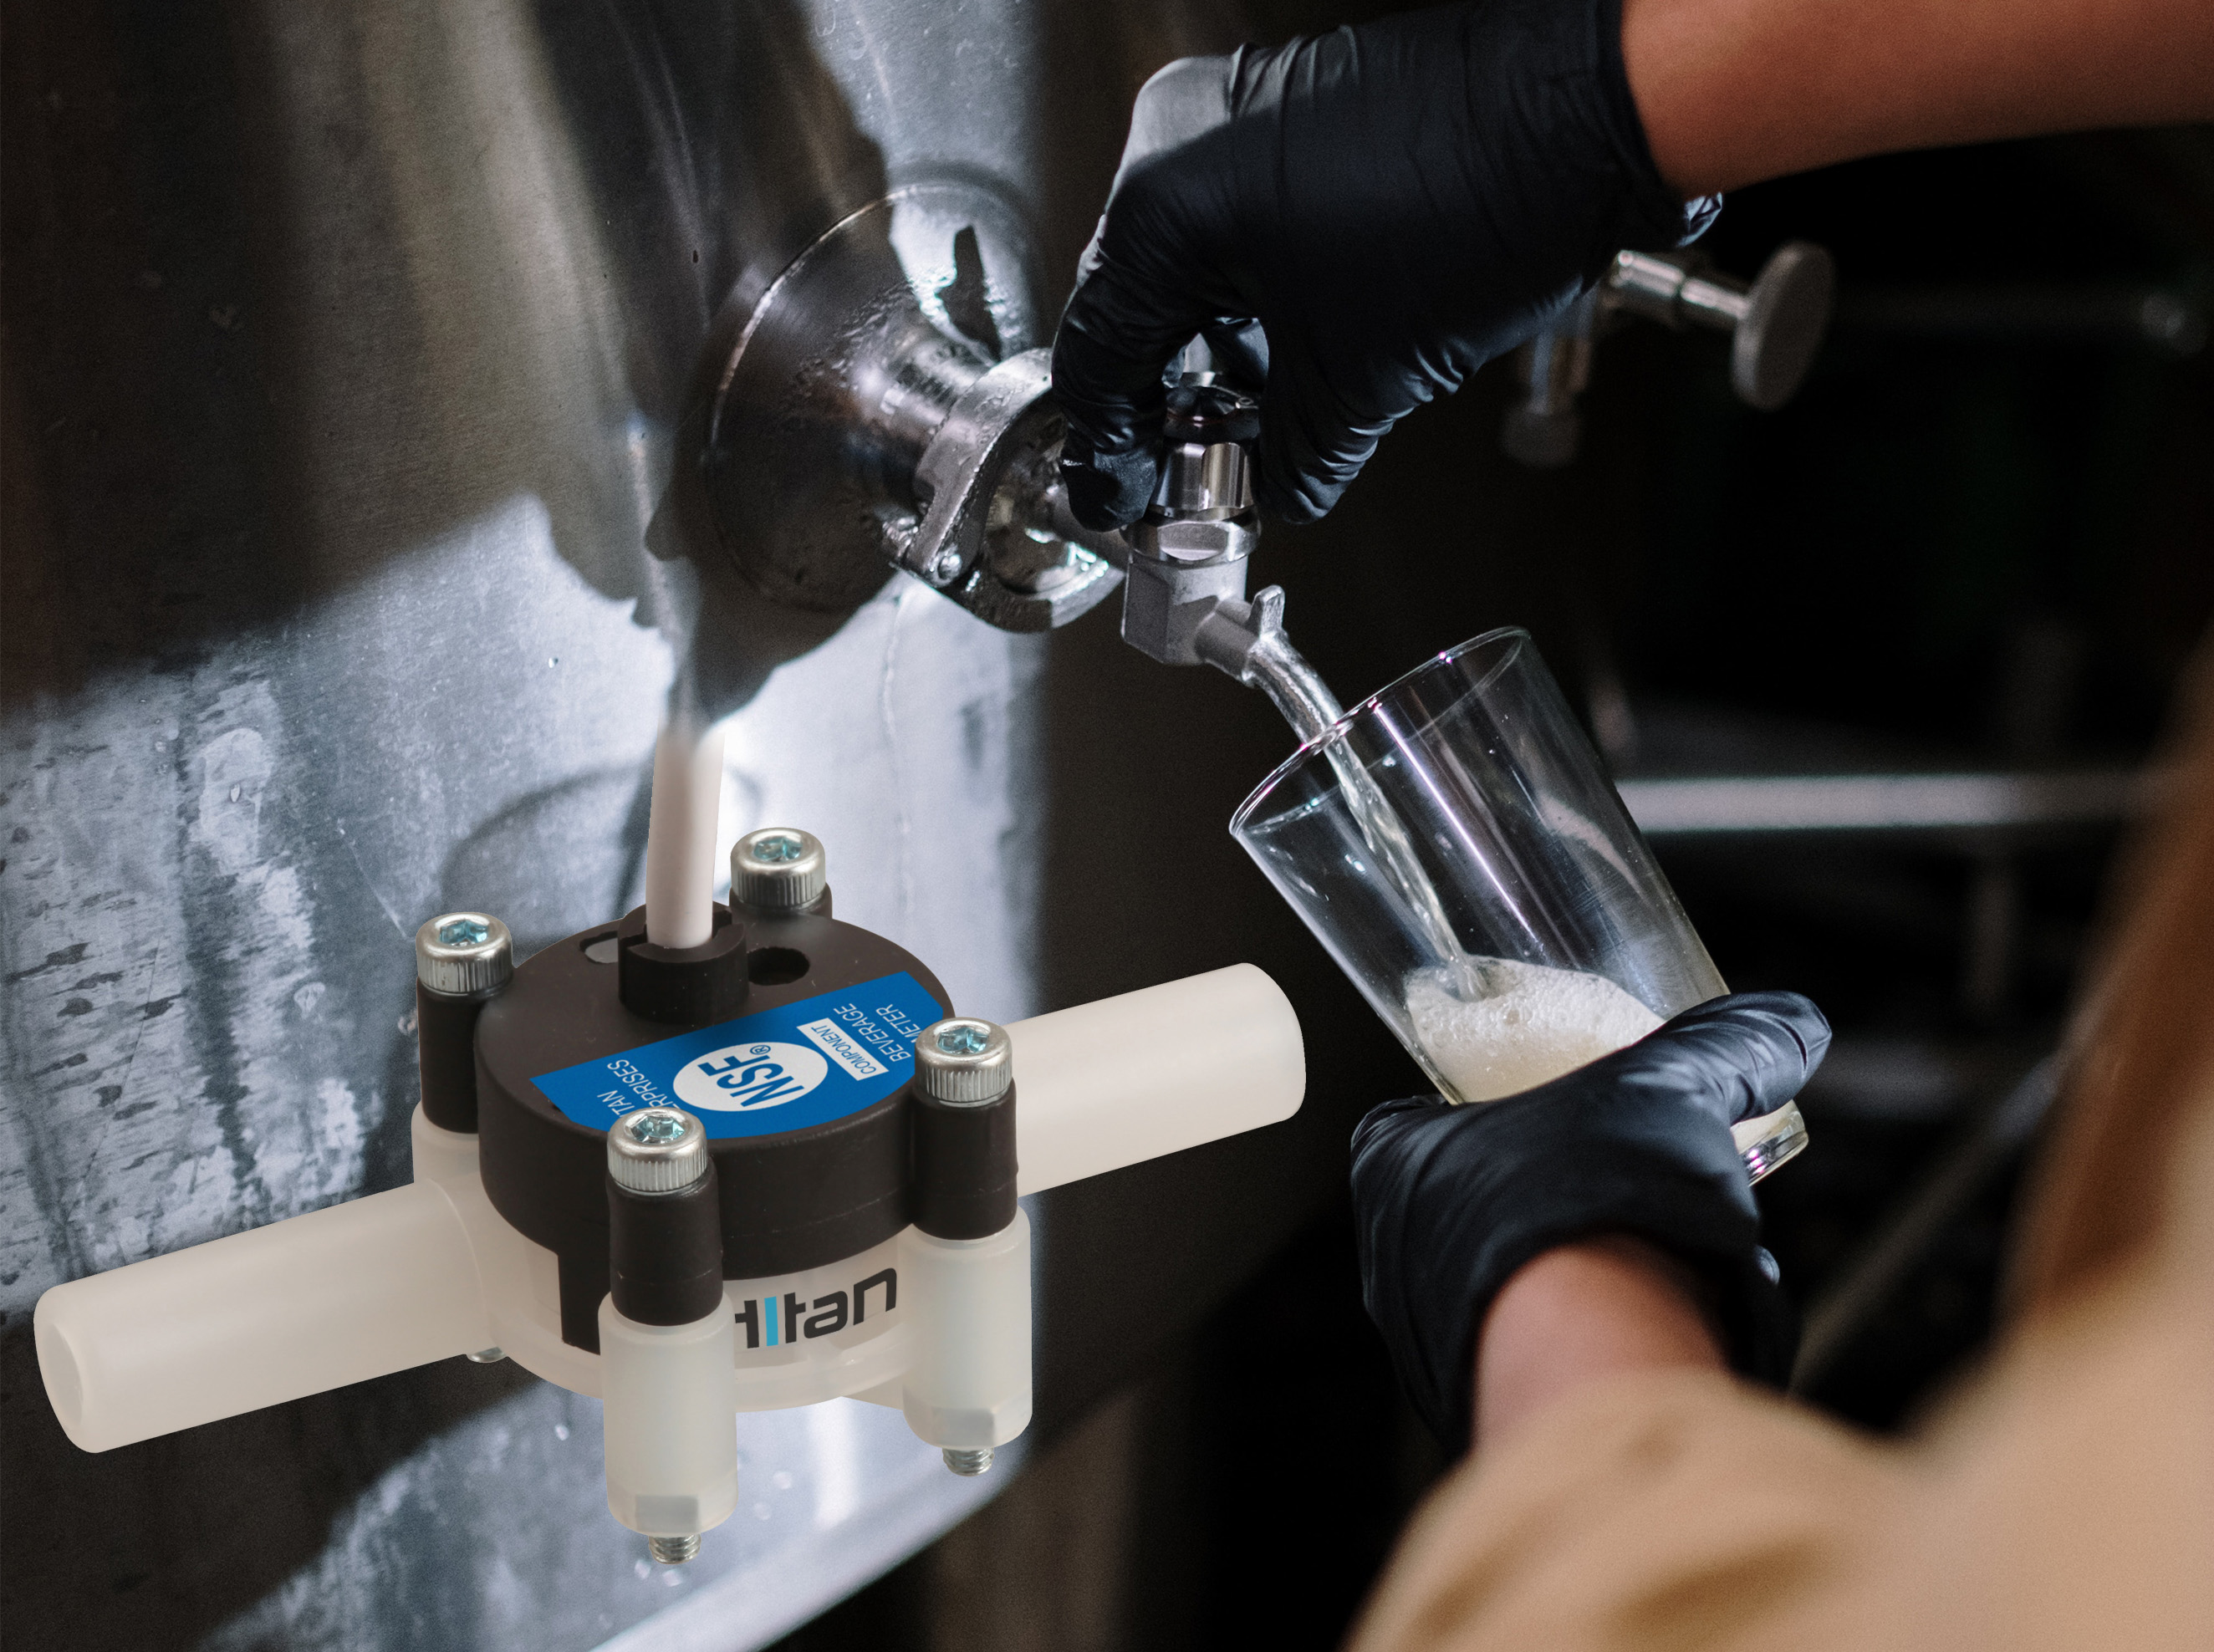 Titan’s NSF-Approved Beverage Flow Meter